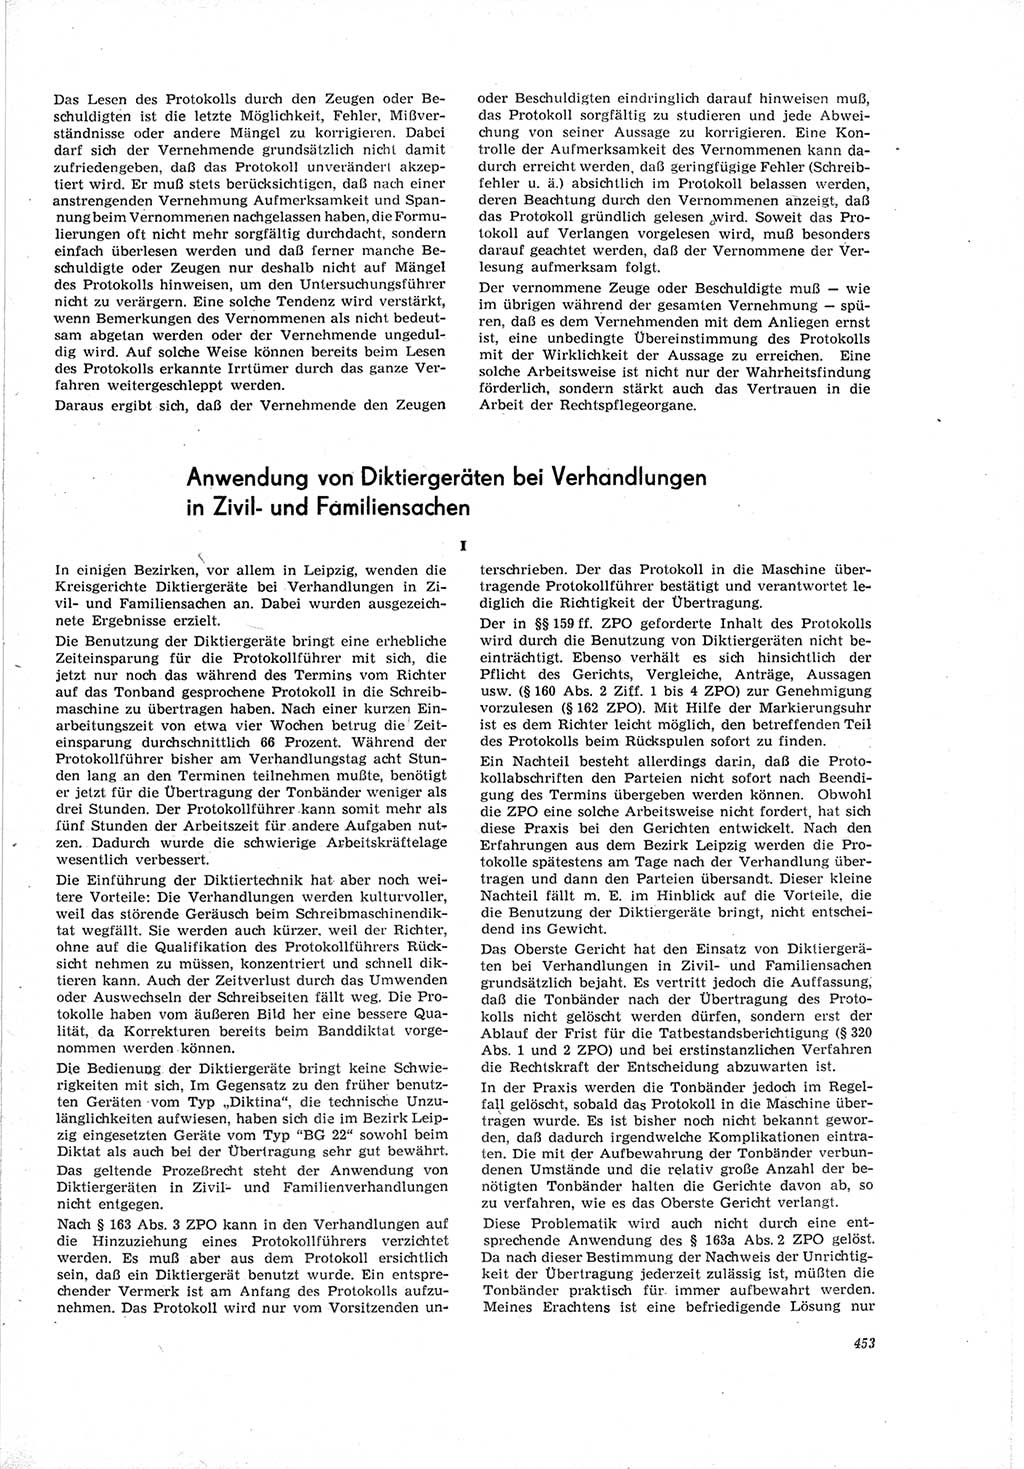 Neue Justiz (NJ), Zeitschrift für Recht und Rechtswissenschaft [Deutsche Demokratische Republik (DDR)], 19. Jahrgang 1965, Seite 453 (NJ DDR 1965, S. 453)